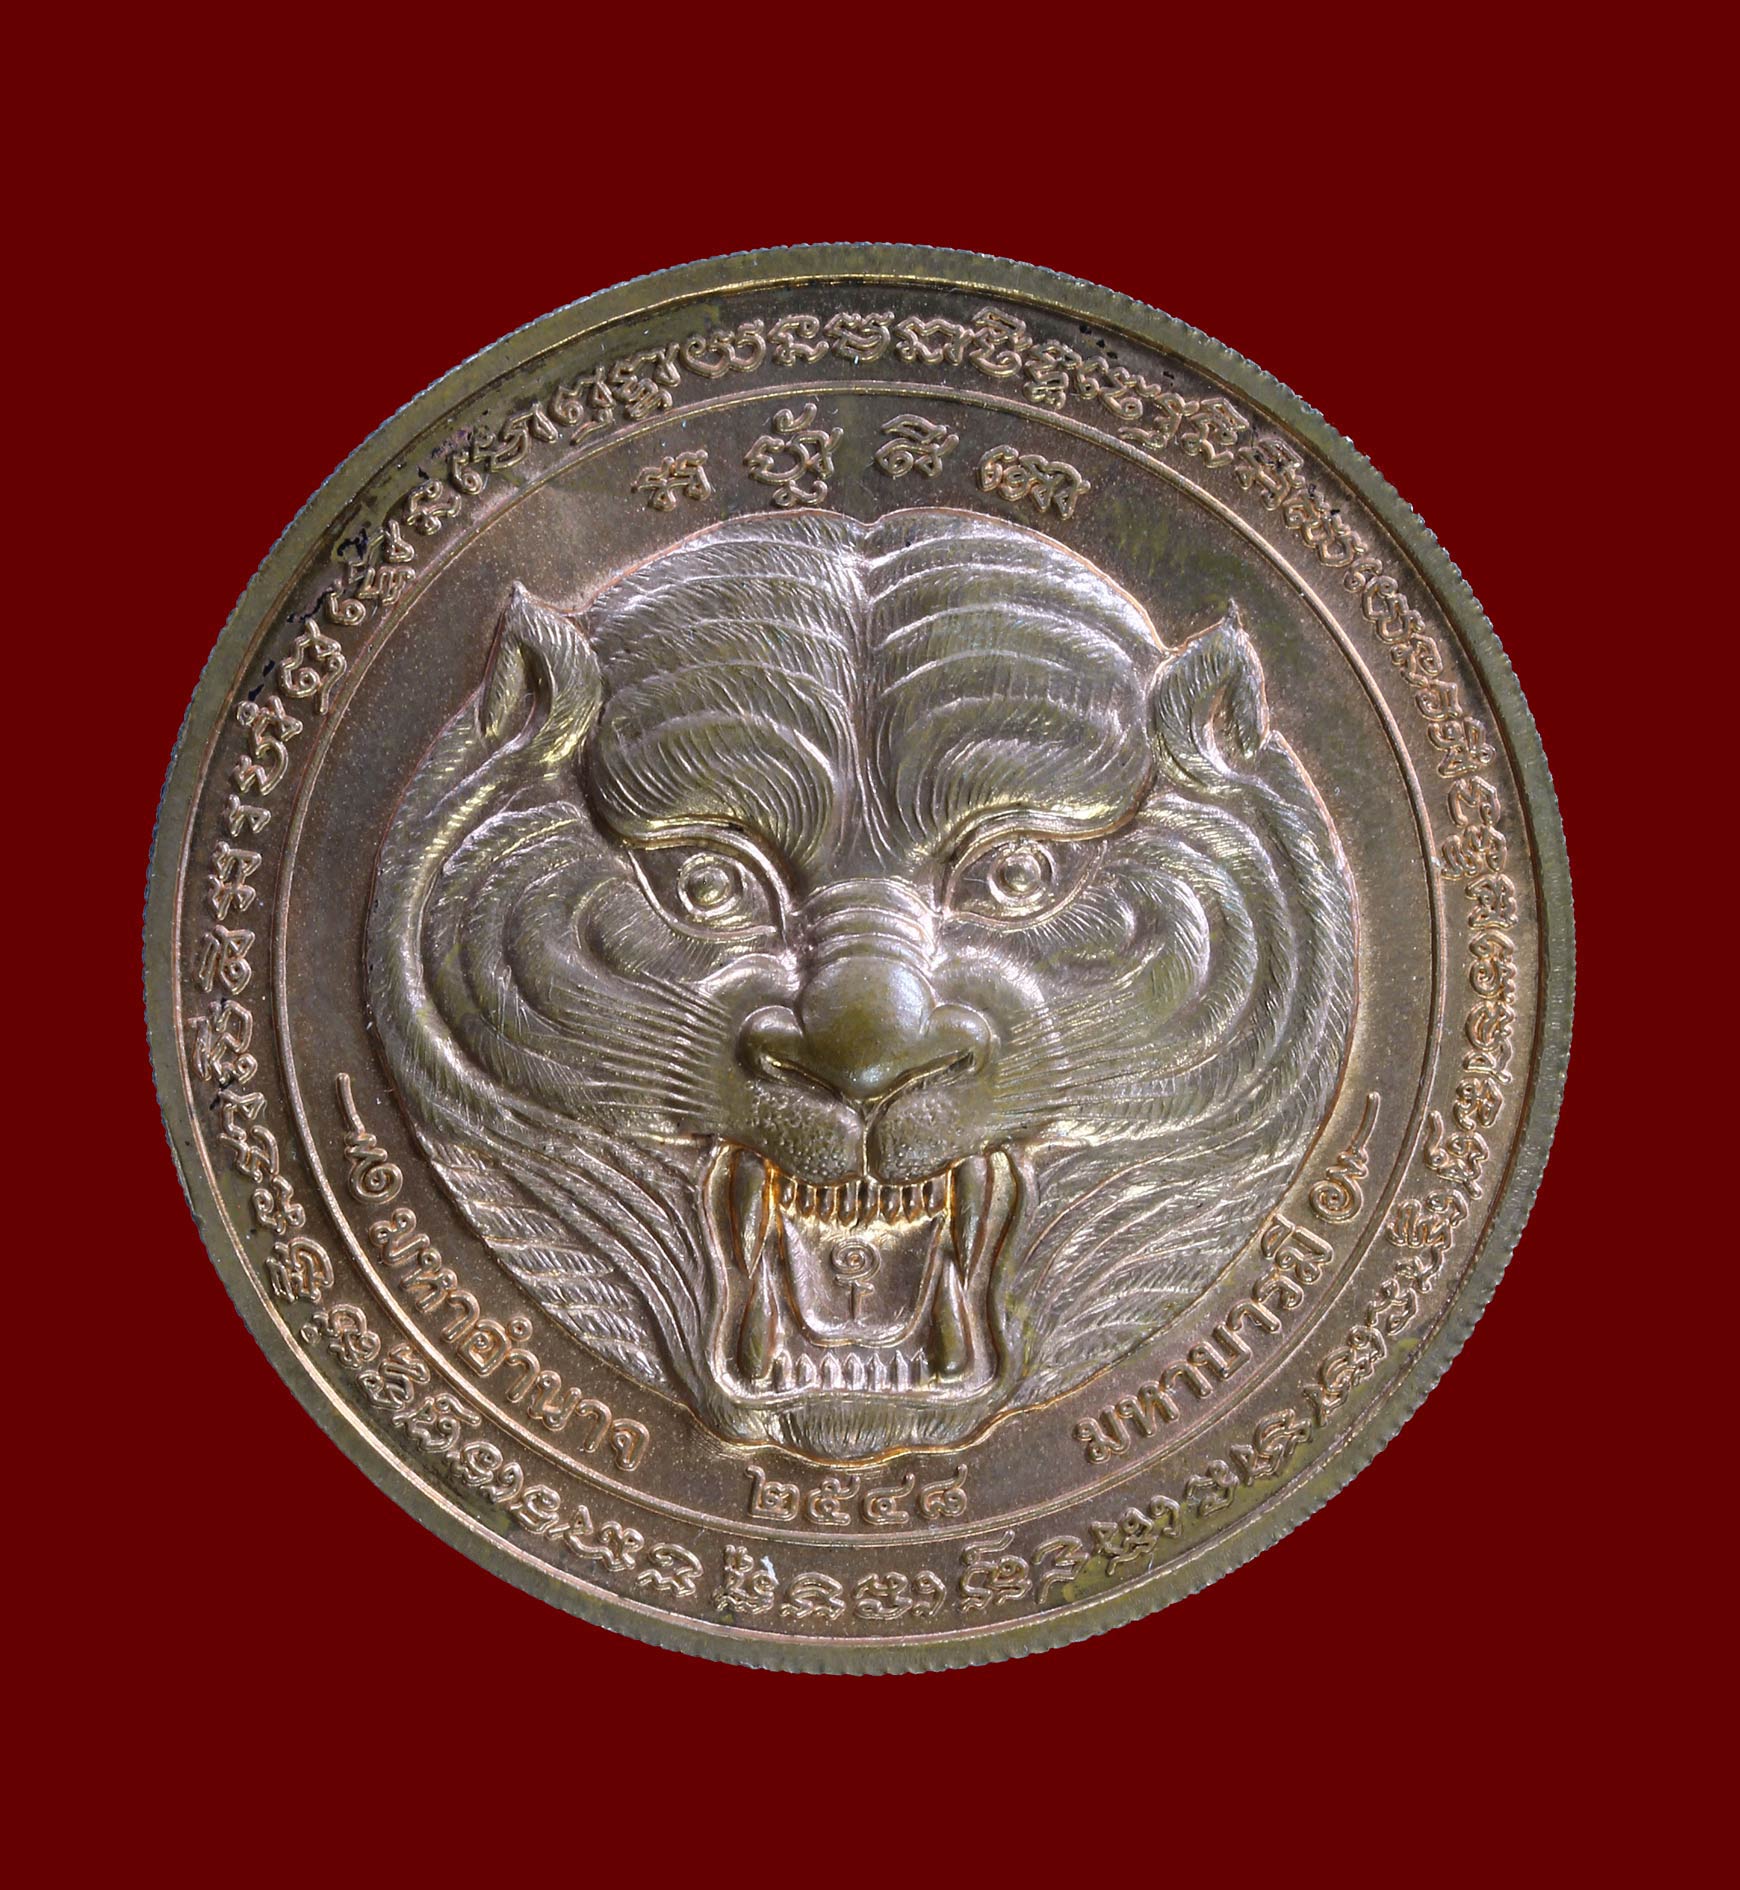 เหรียญกลมใหญ่ หลวงพ่อเพี้ยน รุ่นมหาอำนาจ มหาบารมี วัดเกริ่นกฐิน ปี 2548